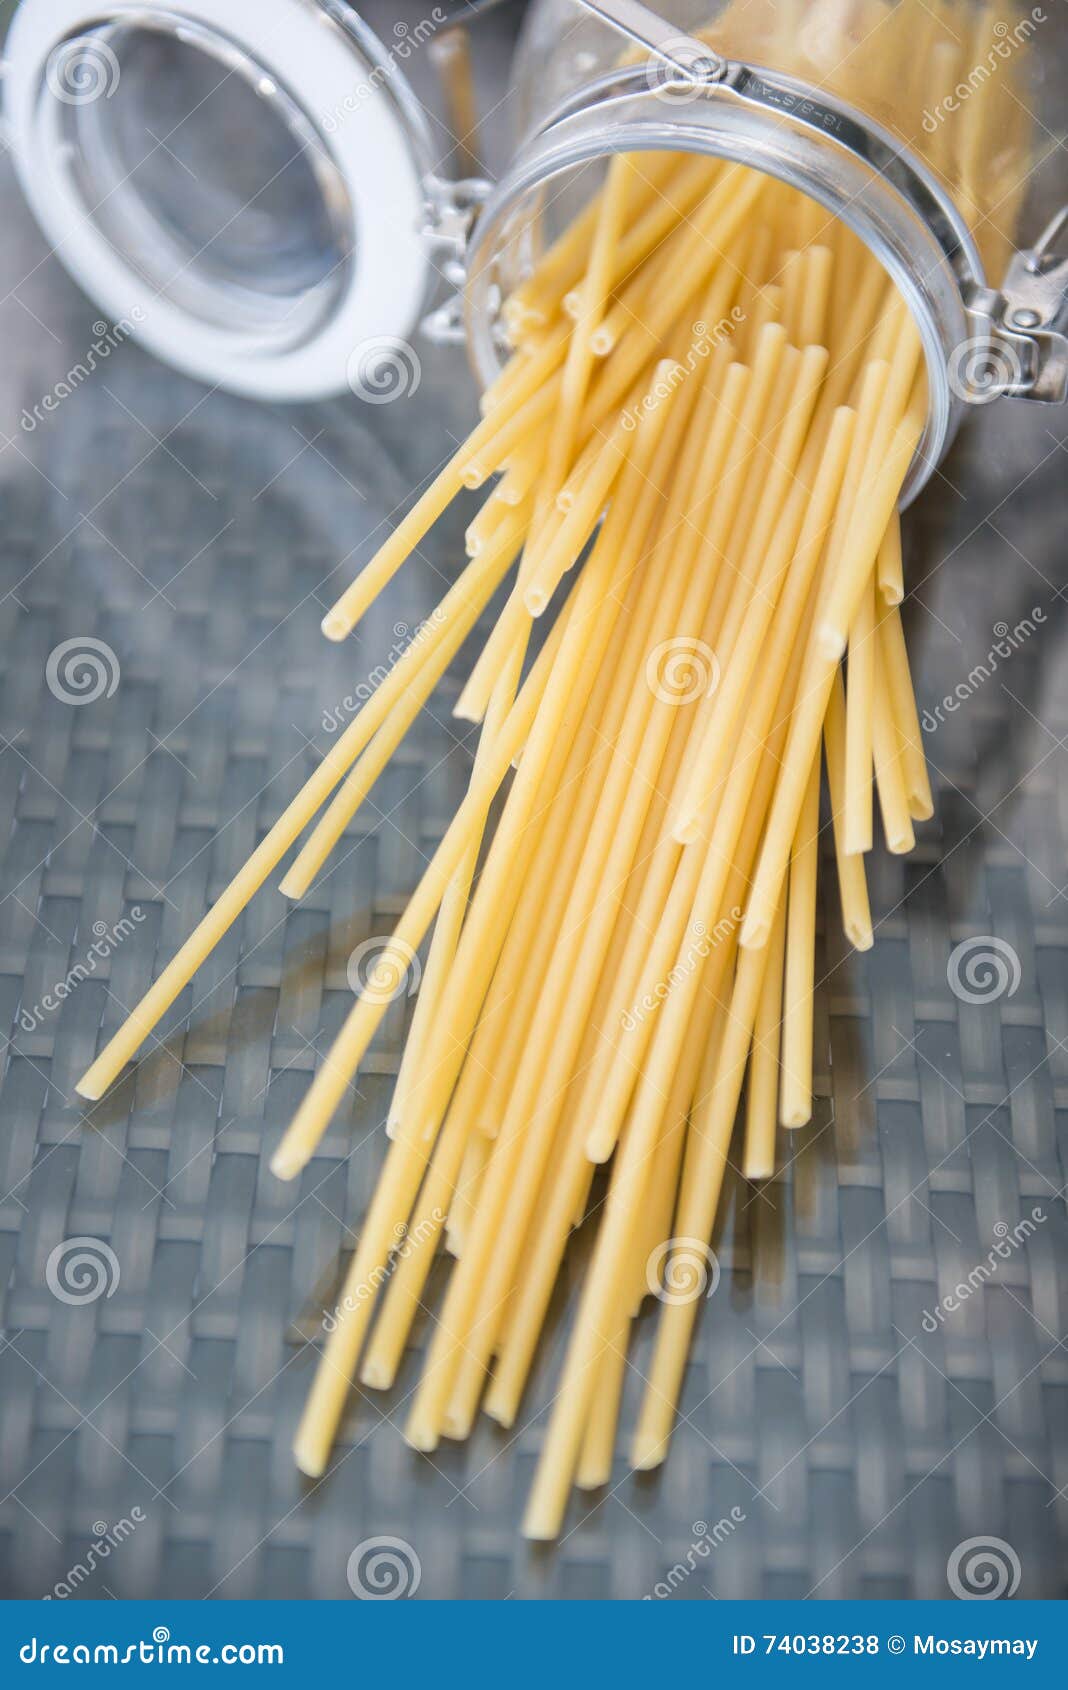 Raw italian spaghetti in jar, food